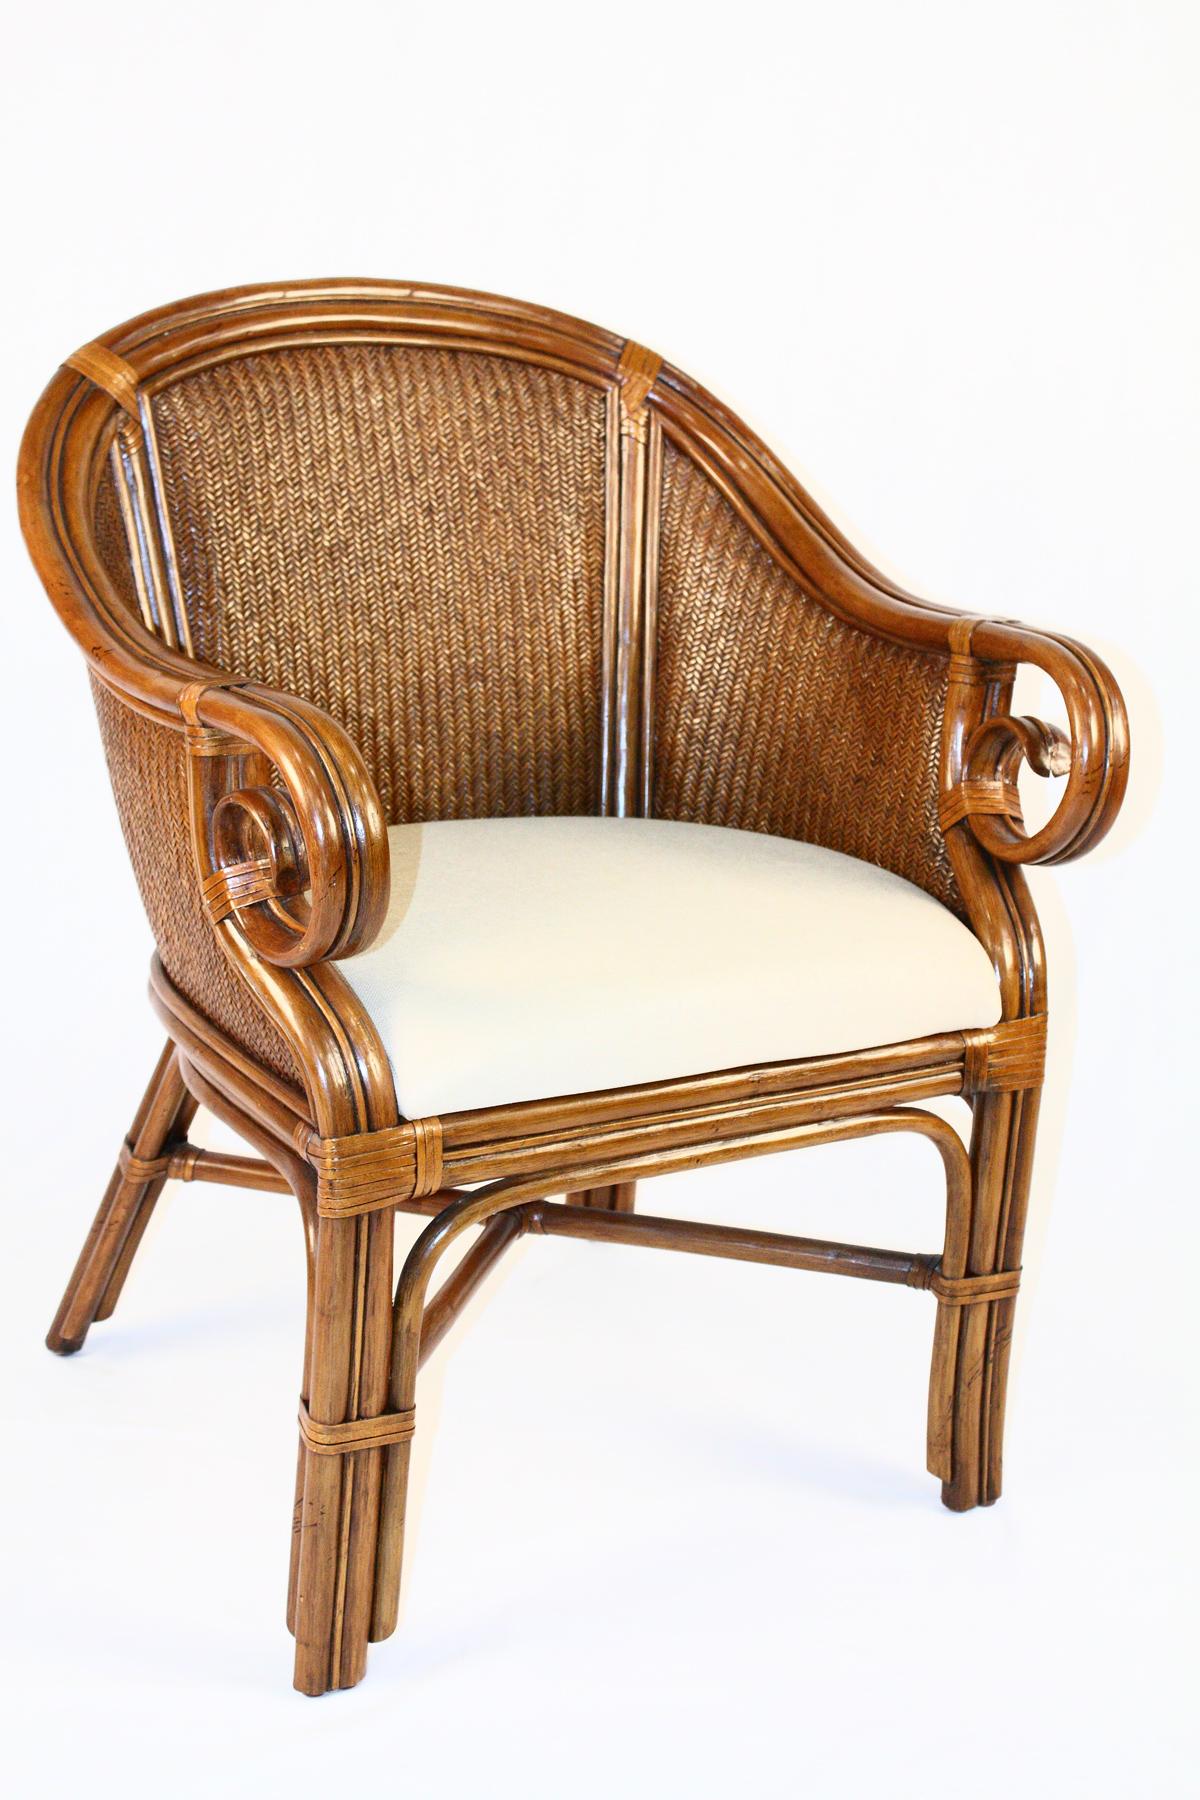 rattan wicker chair